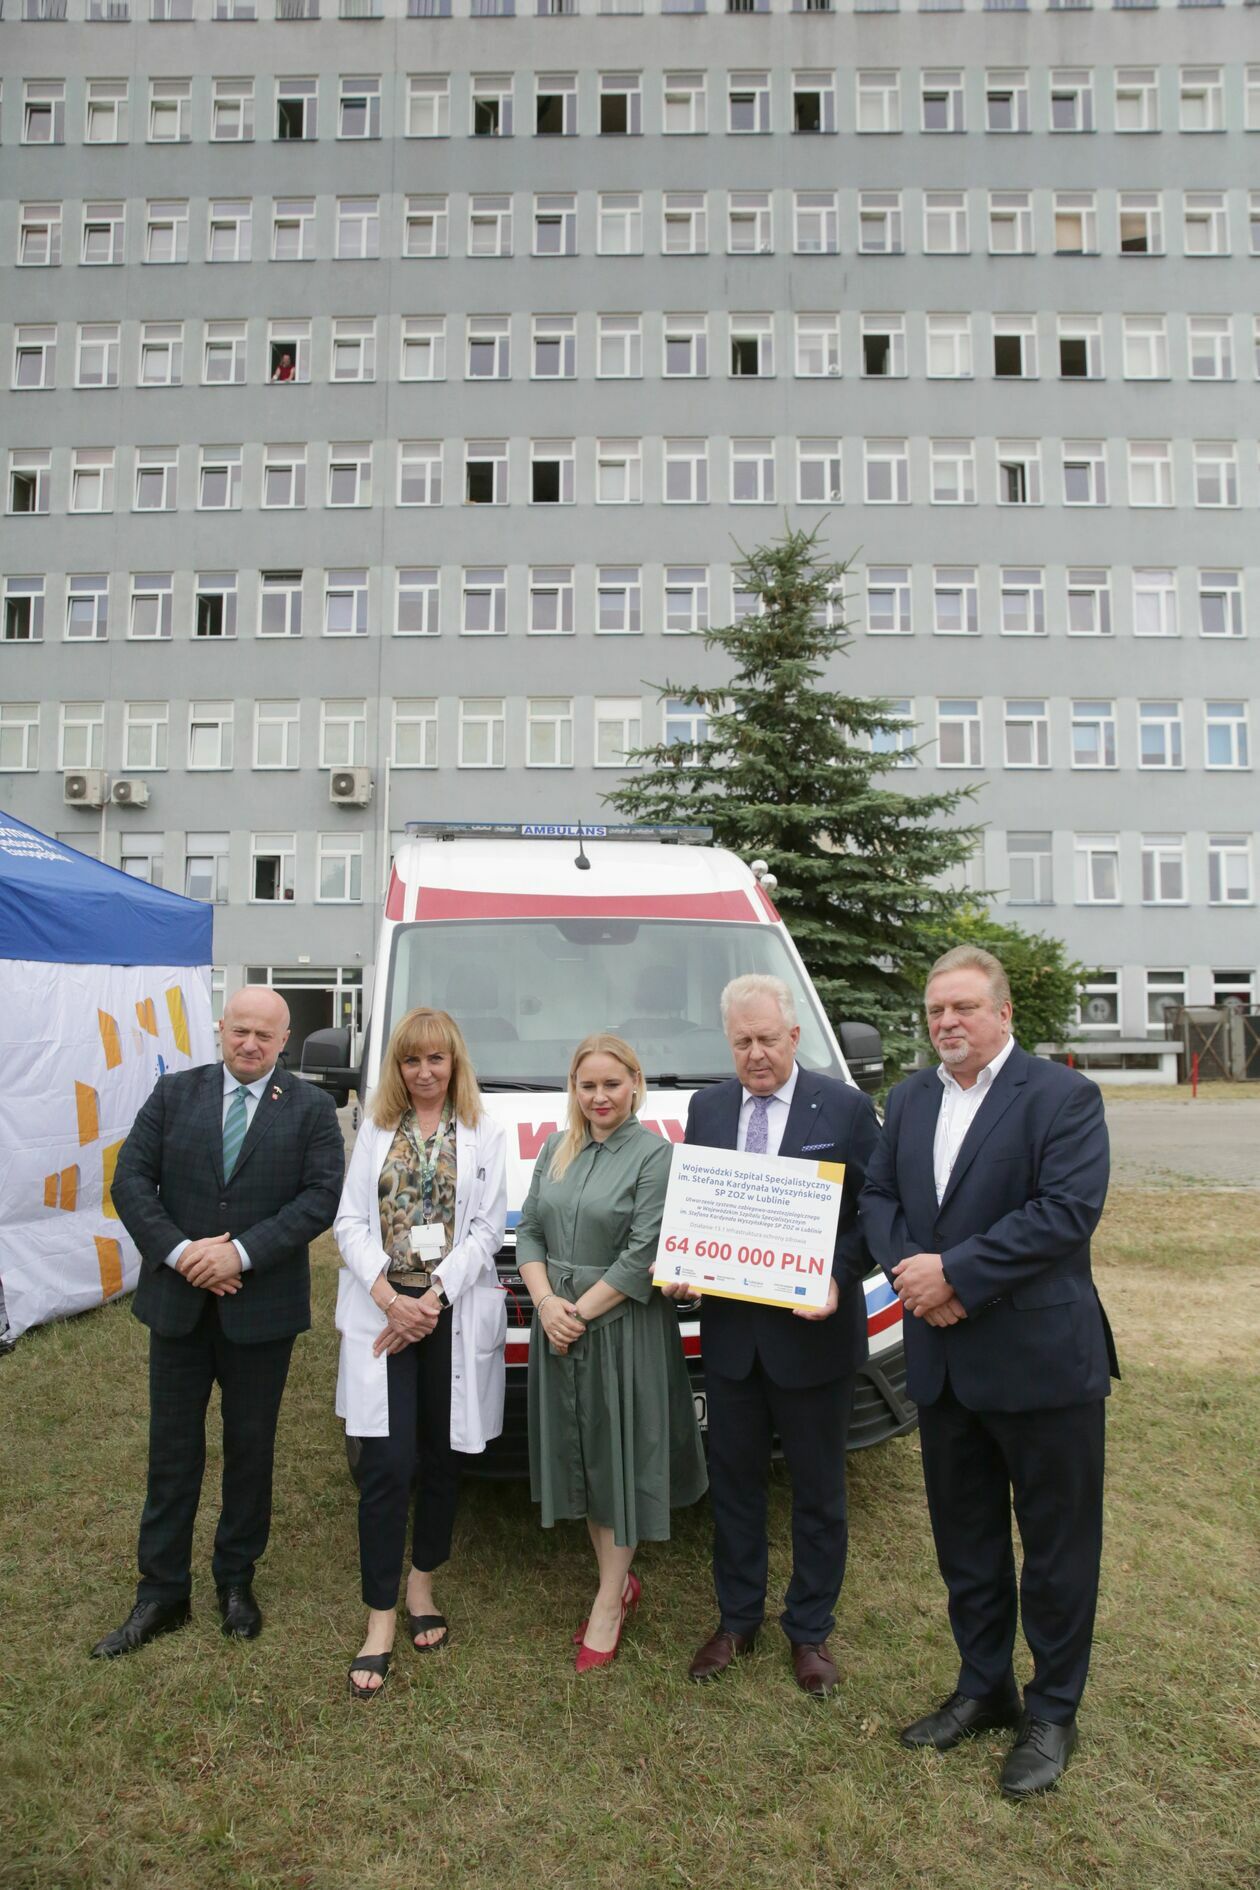  Podpisanie umowy na budowę nowej części szpitala wojewódzkiego przy al. Kraśnickiej (zdjęcie 3) - Autor: Paweł Buczkowski